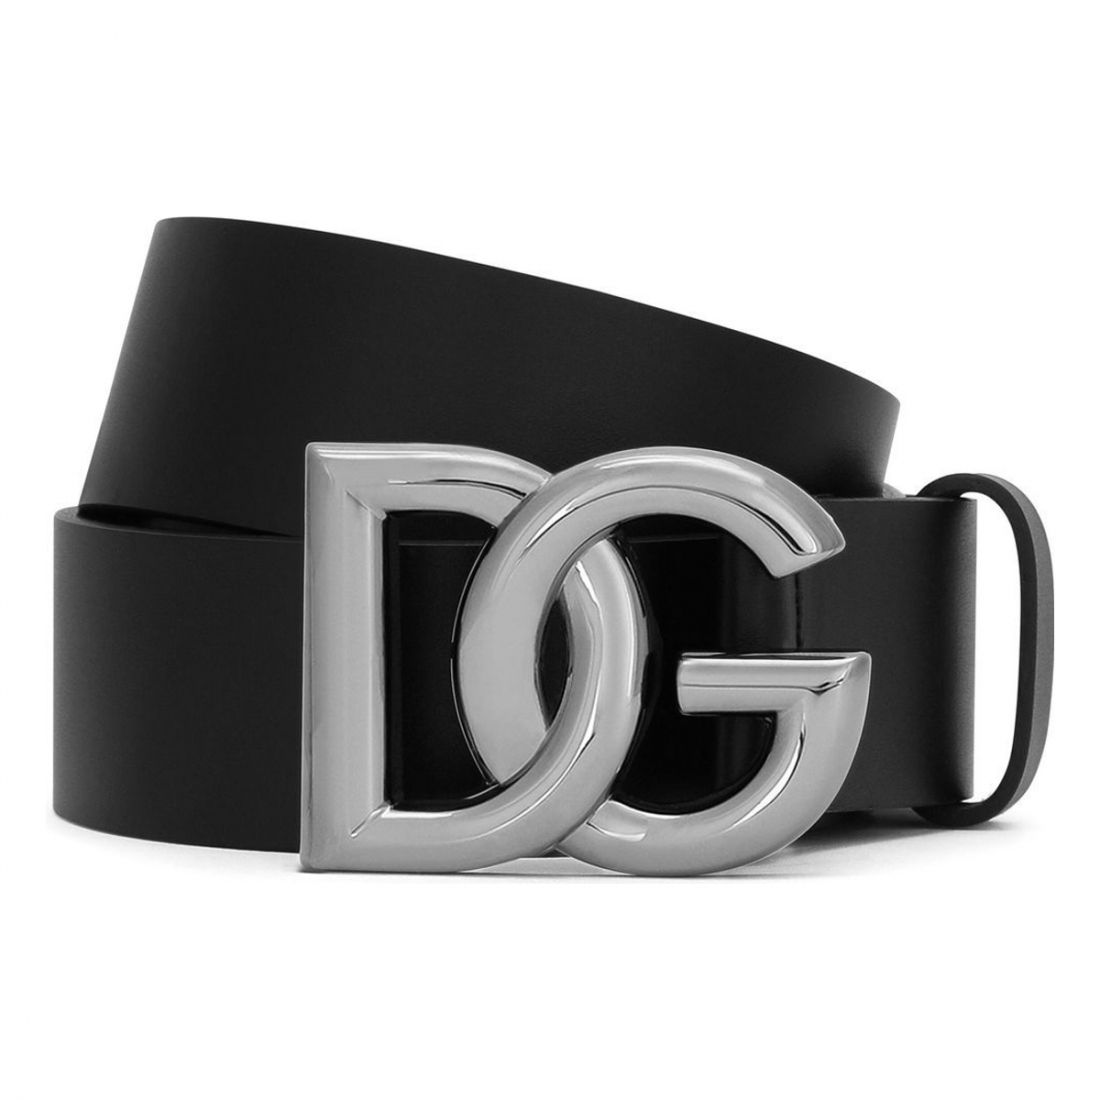 Dolce & Gabbana - Ceinture 'Logo Buckle' pour Hommes